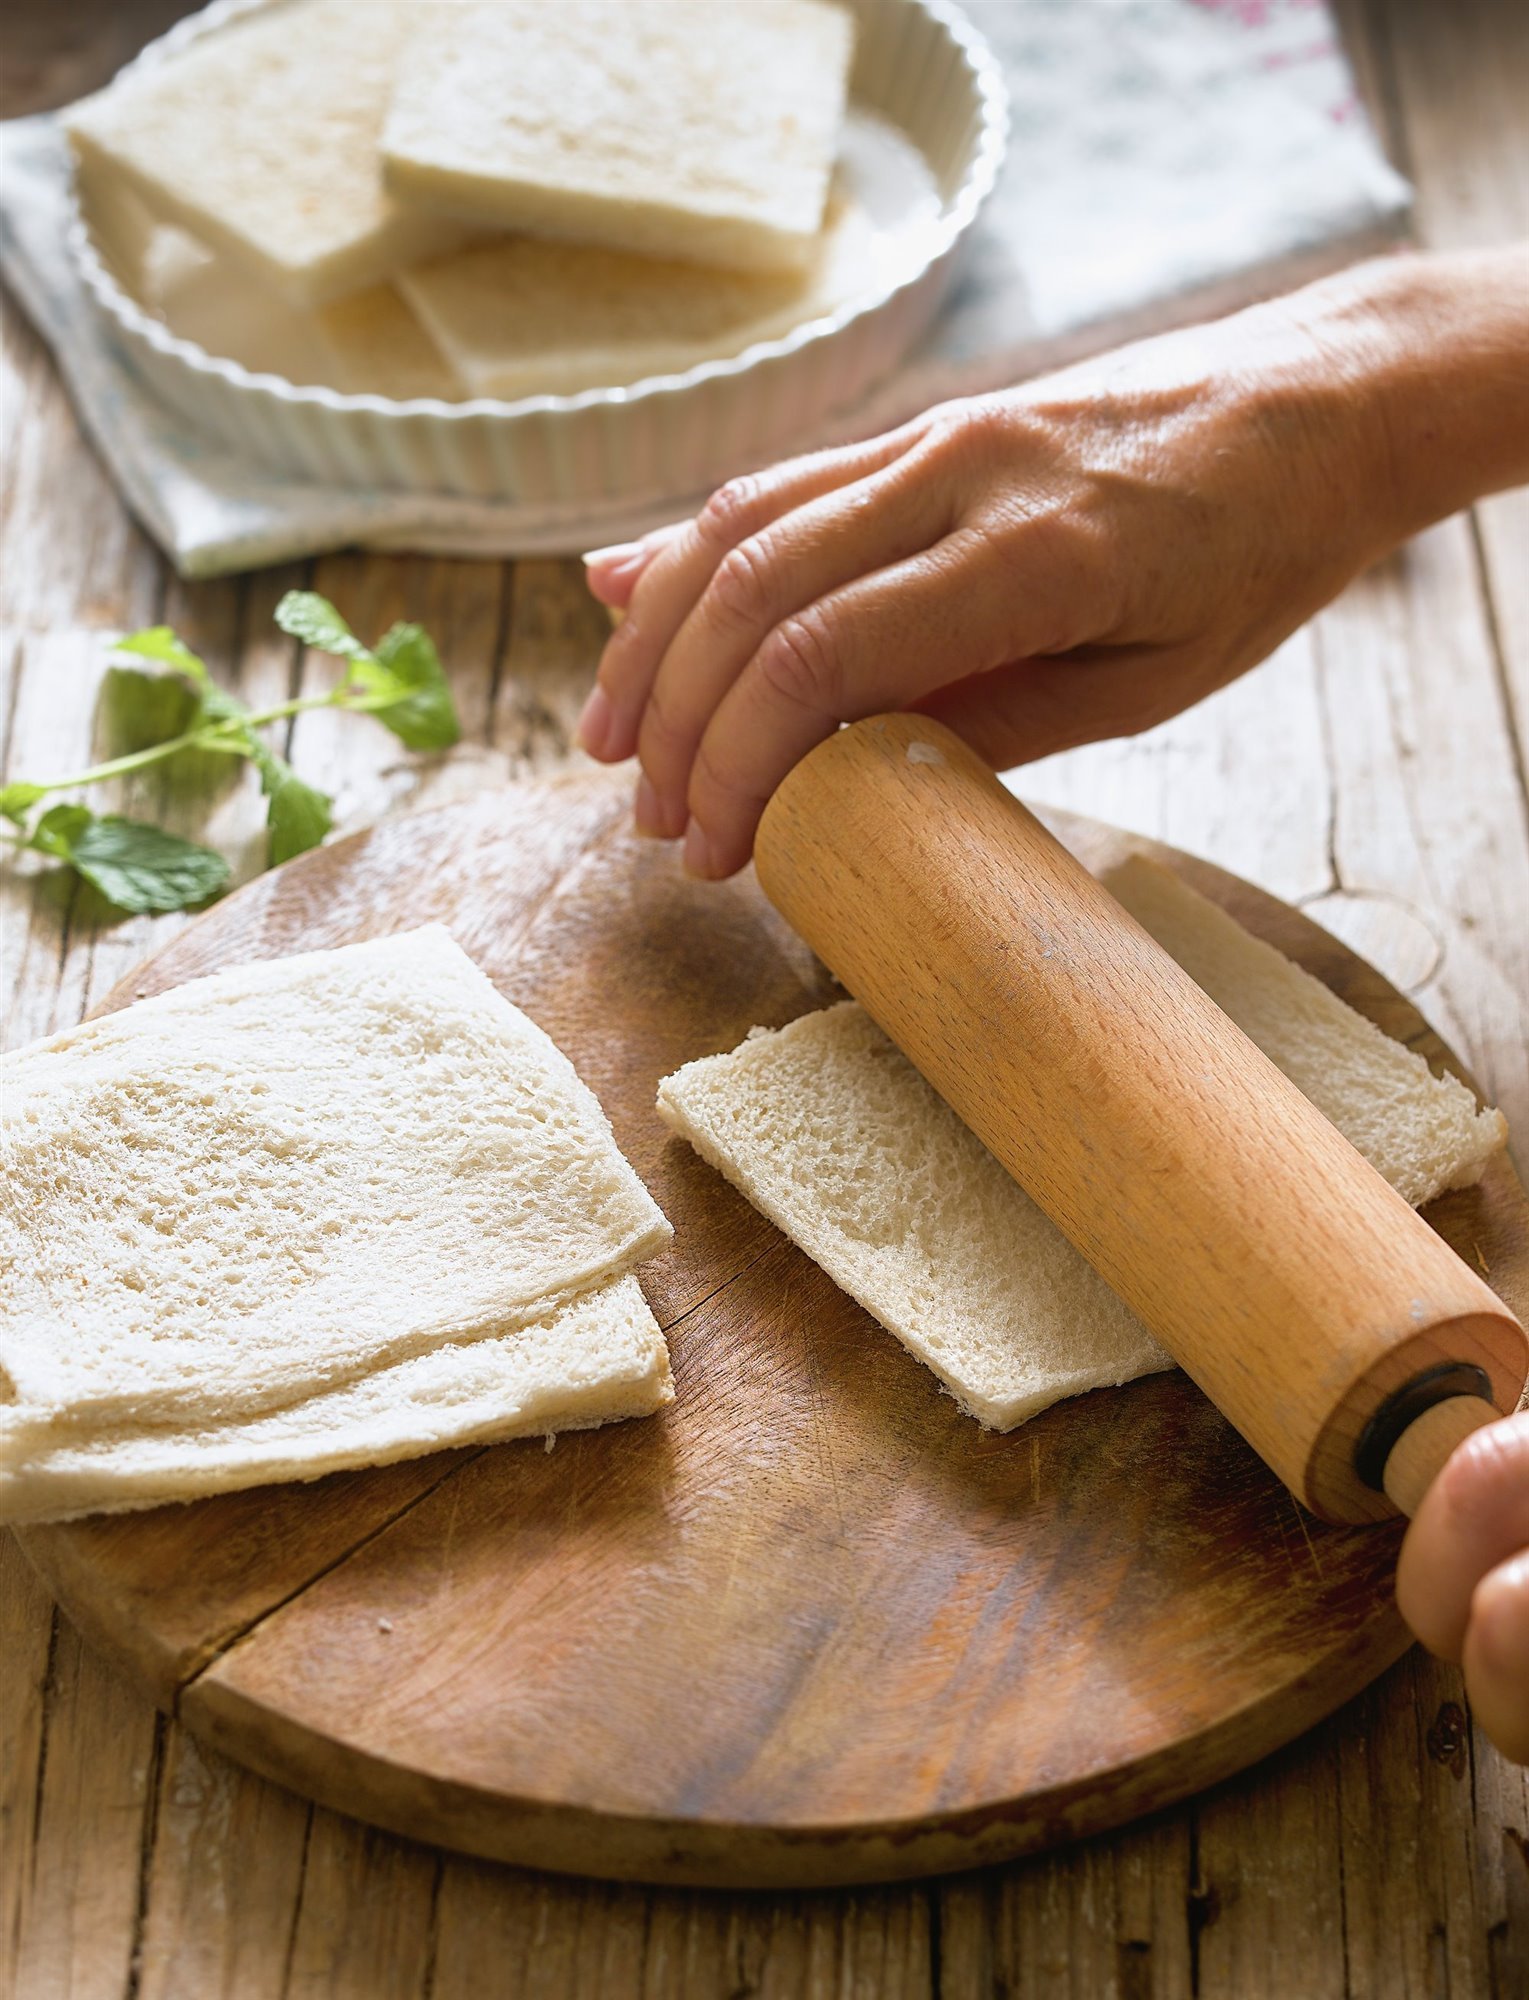 3. Aplana el pan con rodillo